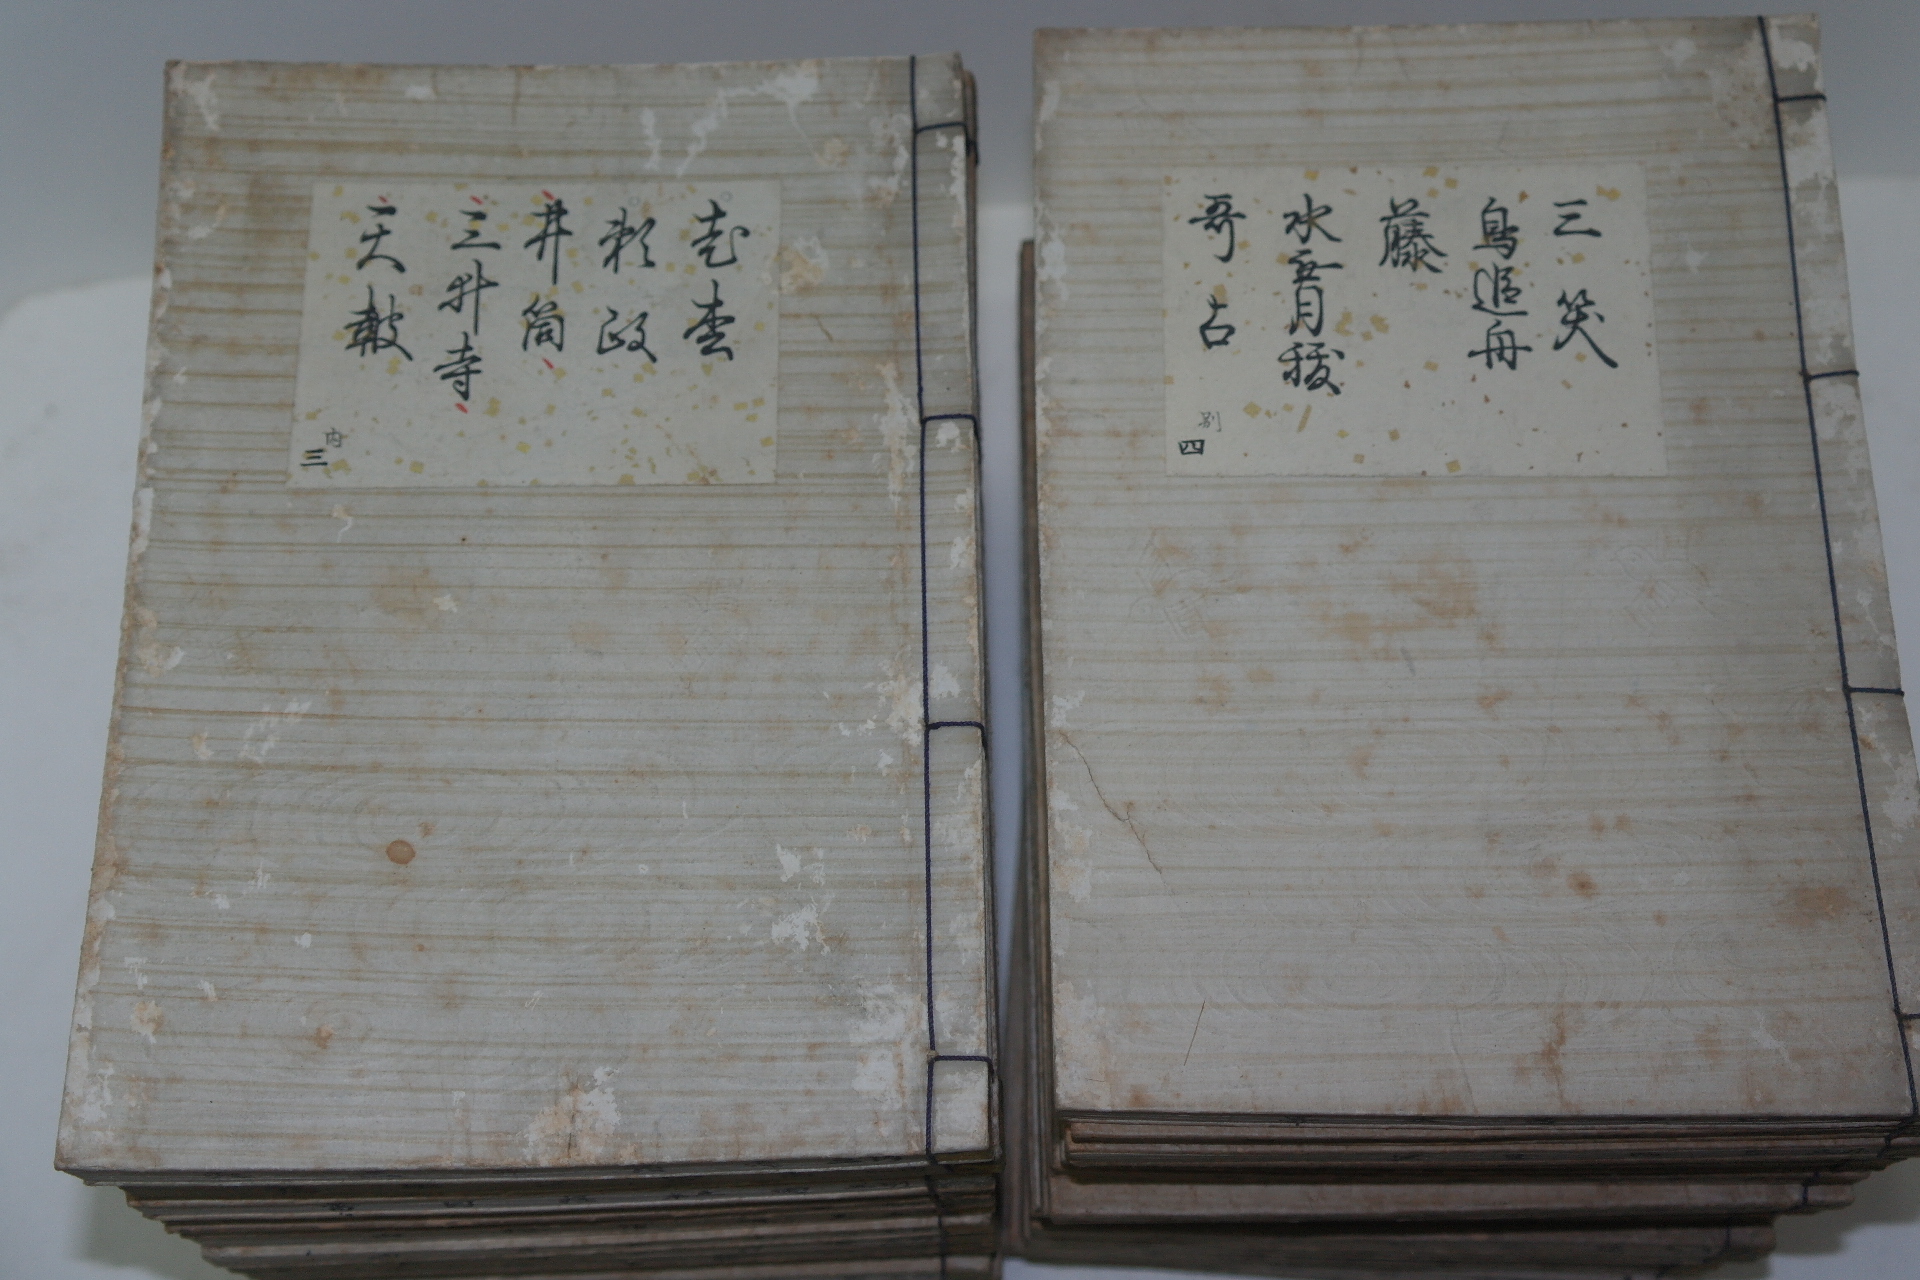 1909년 일본간행 관세청렴선생(觀世淸廉先生) 목판본 34책